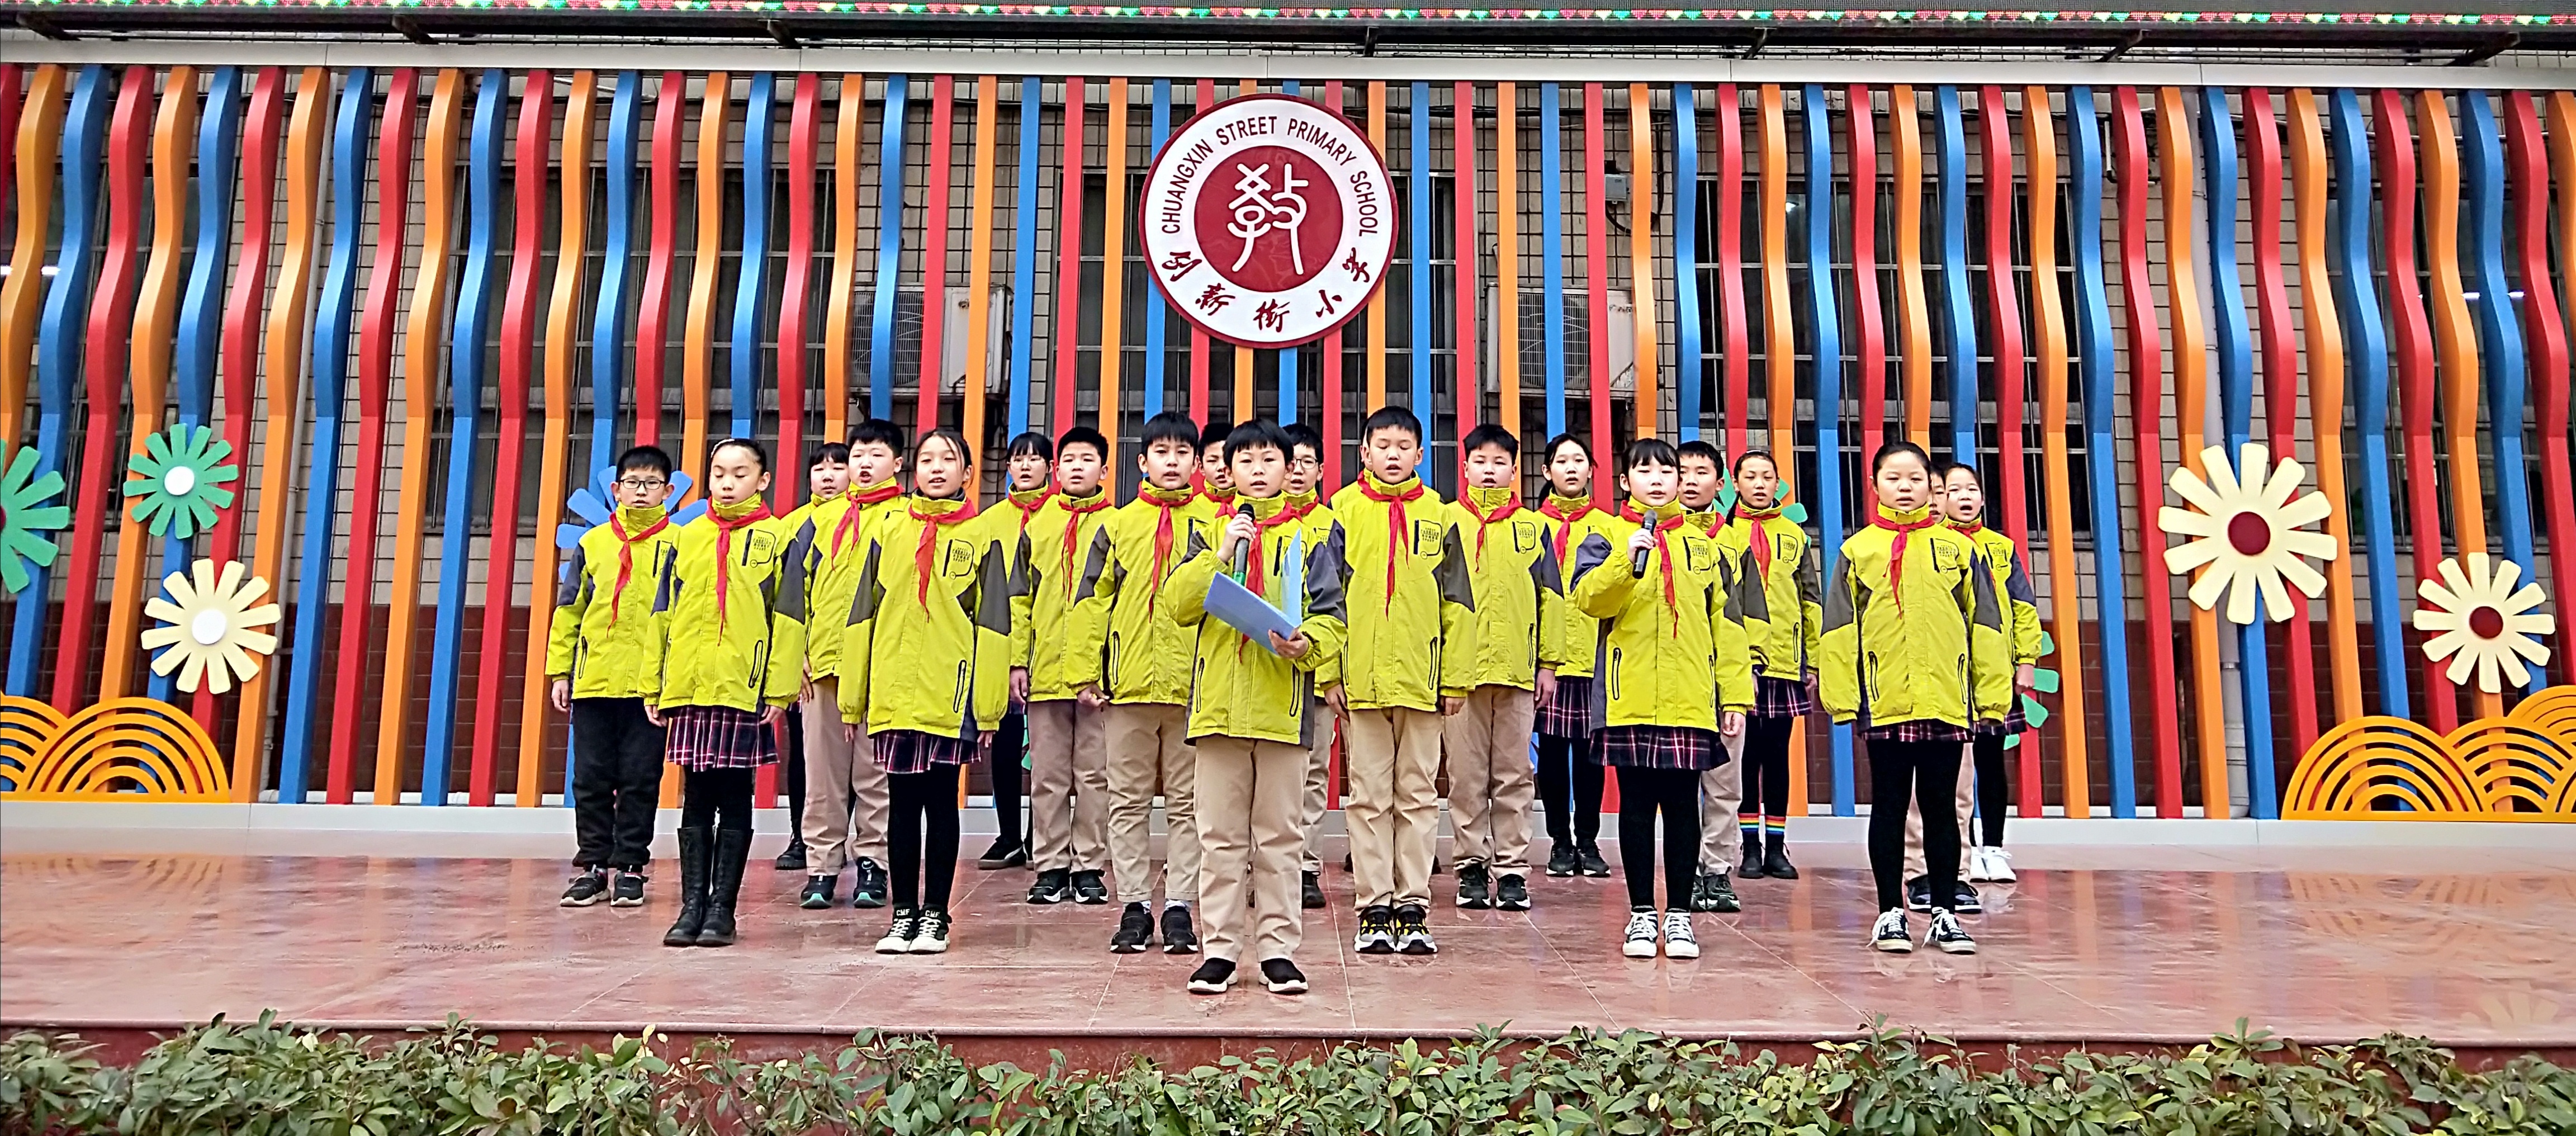 郑州市创新街小学举行致敬中国航天主题升旗仪式